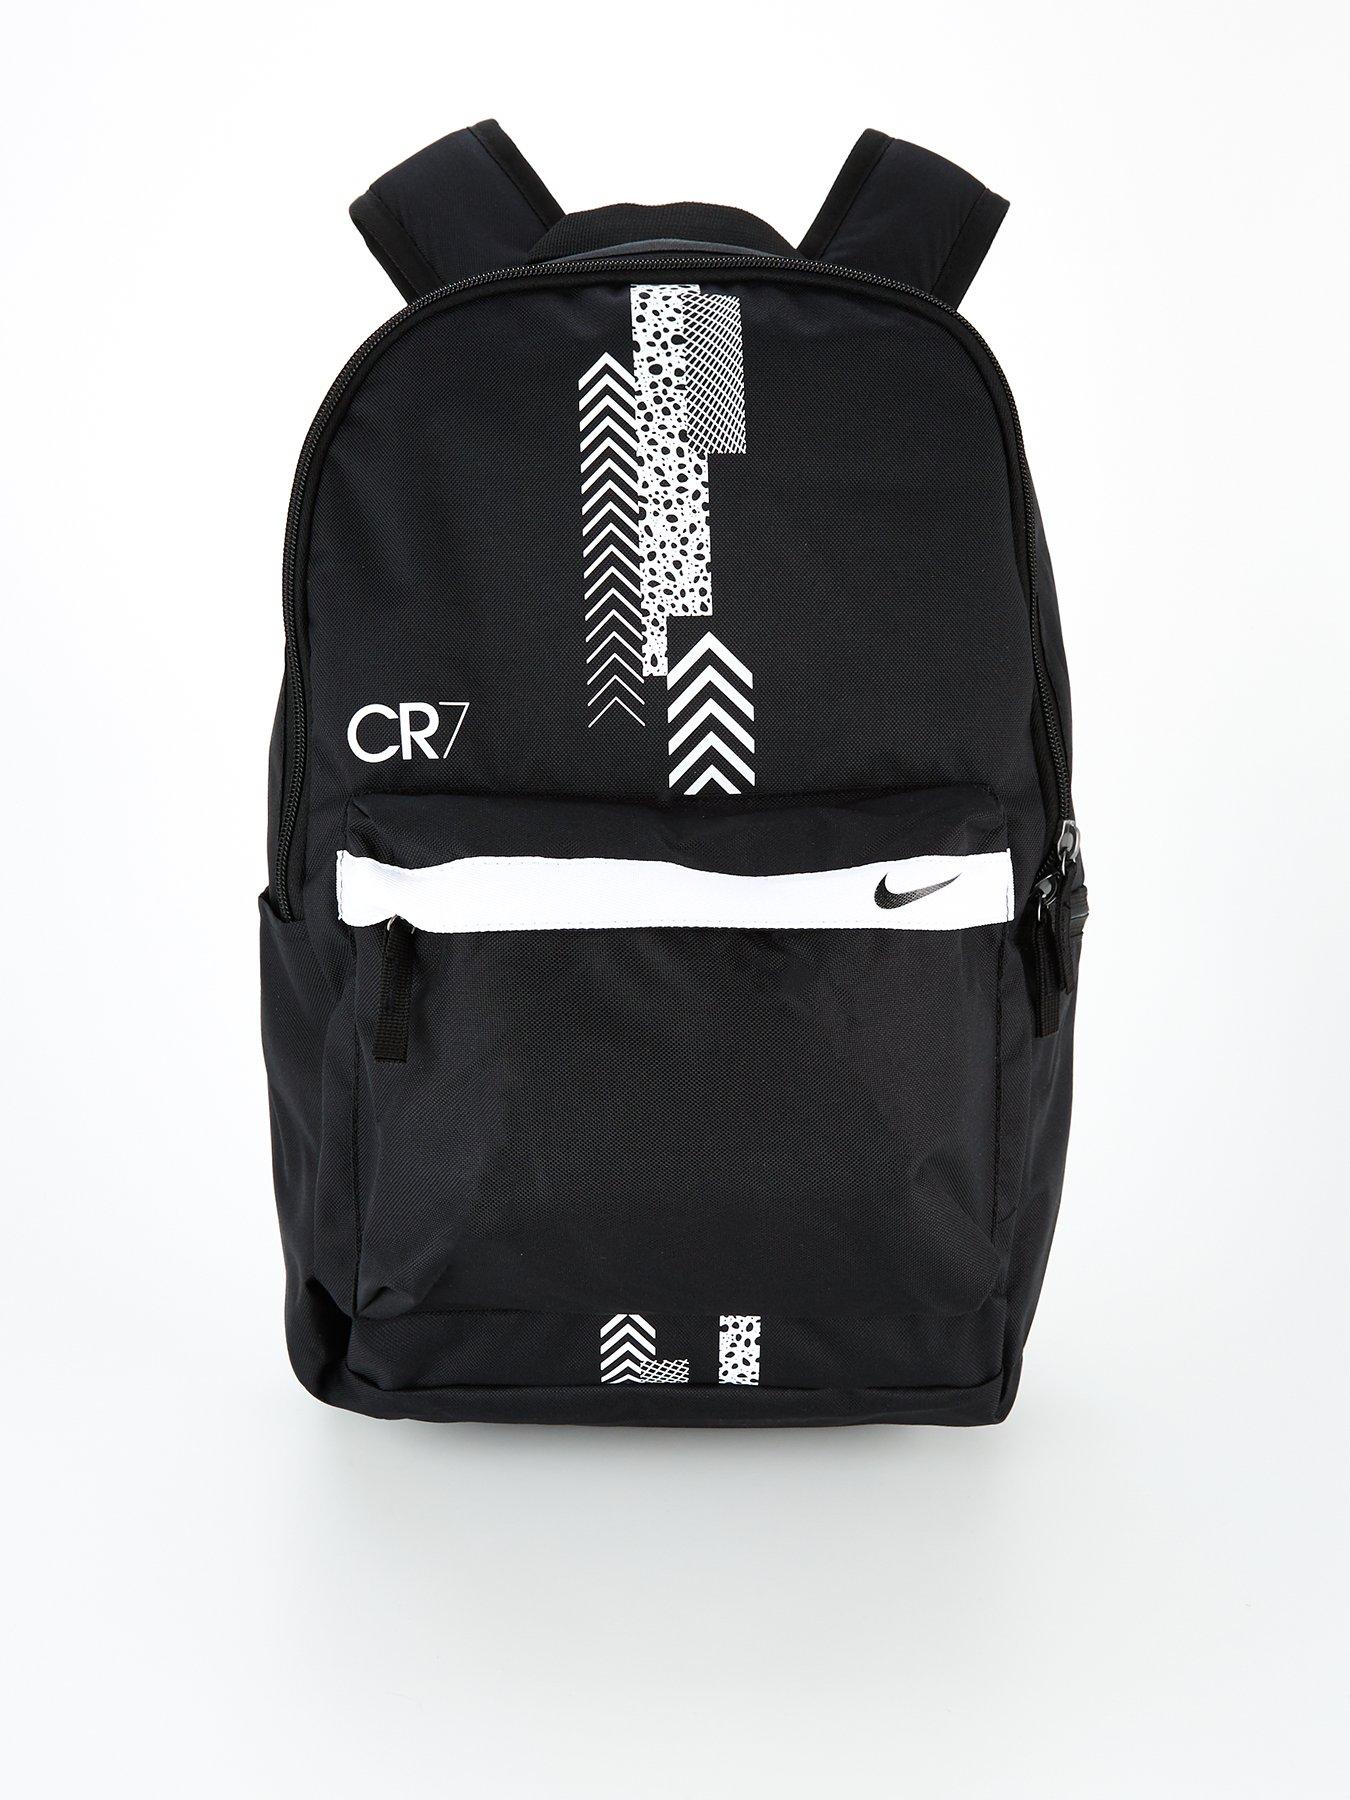 cr7 bag